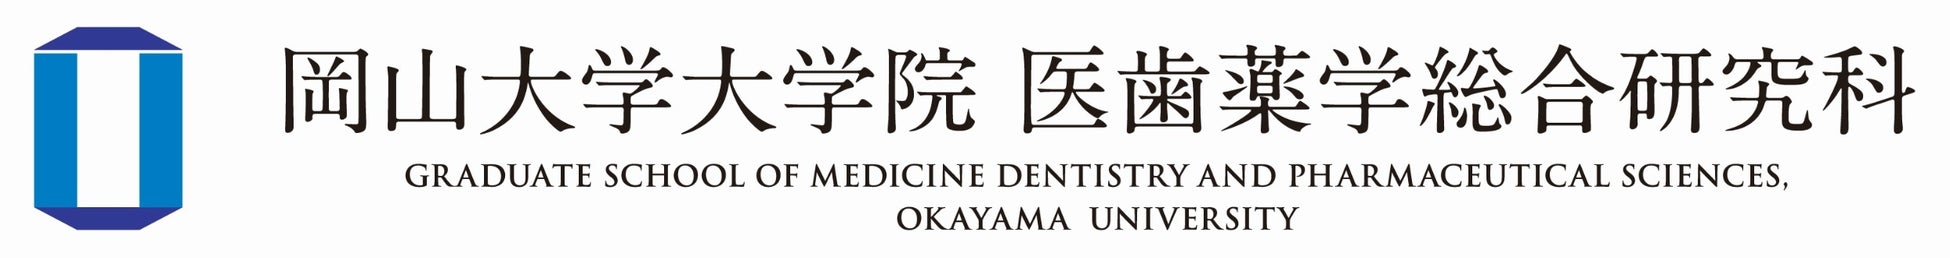 【岡山大学】大学院医歯薬学総合研究科 博士課程 令和5年4月から“一専攻化”へのサブ画像3